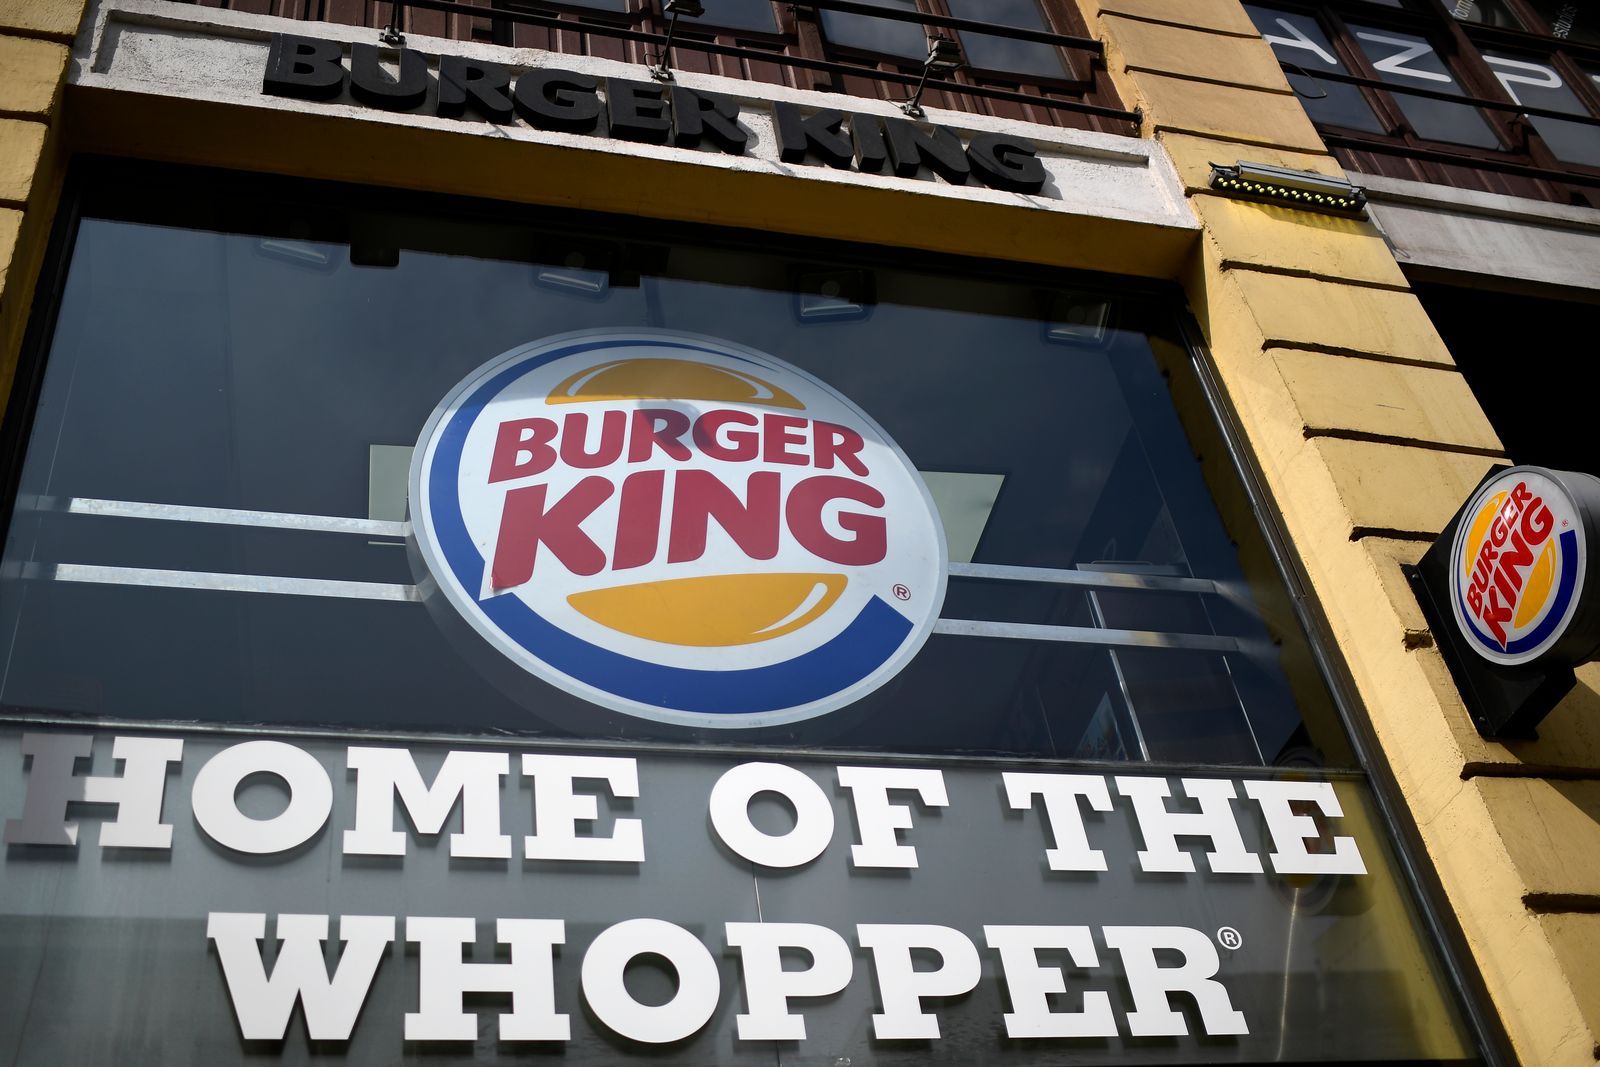 AFP - Burger King